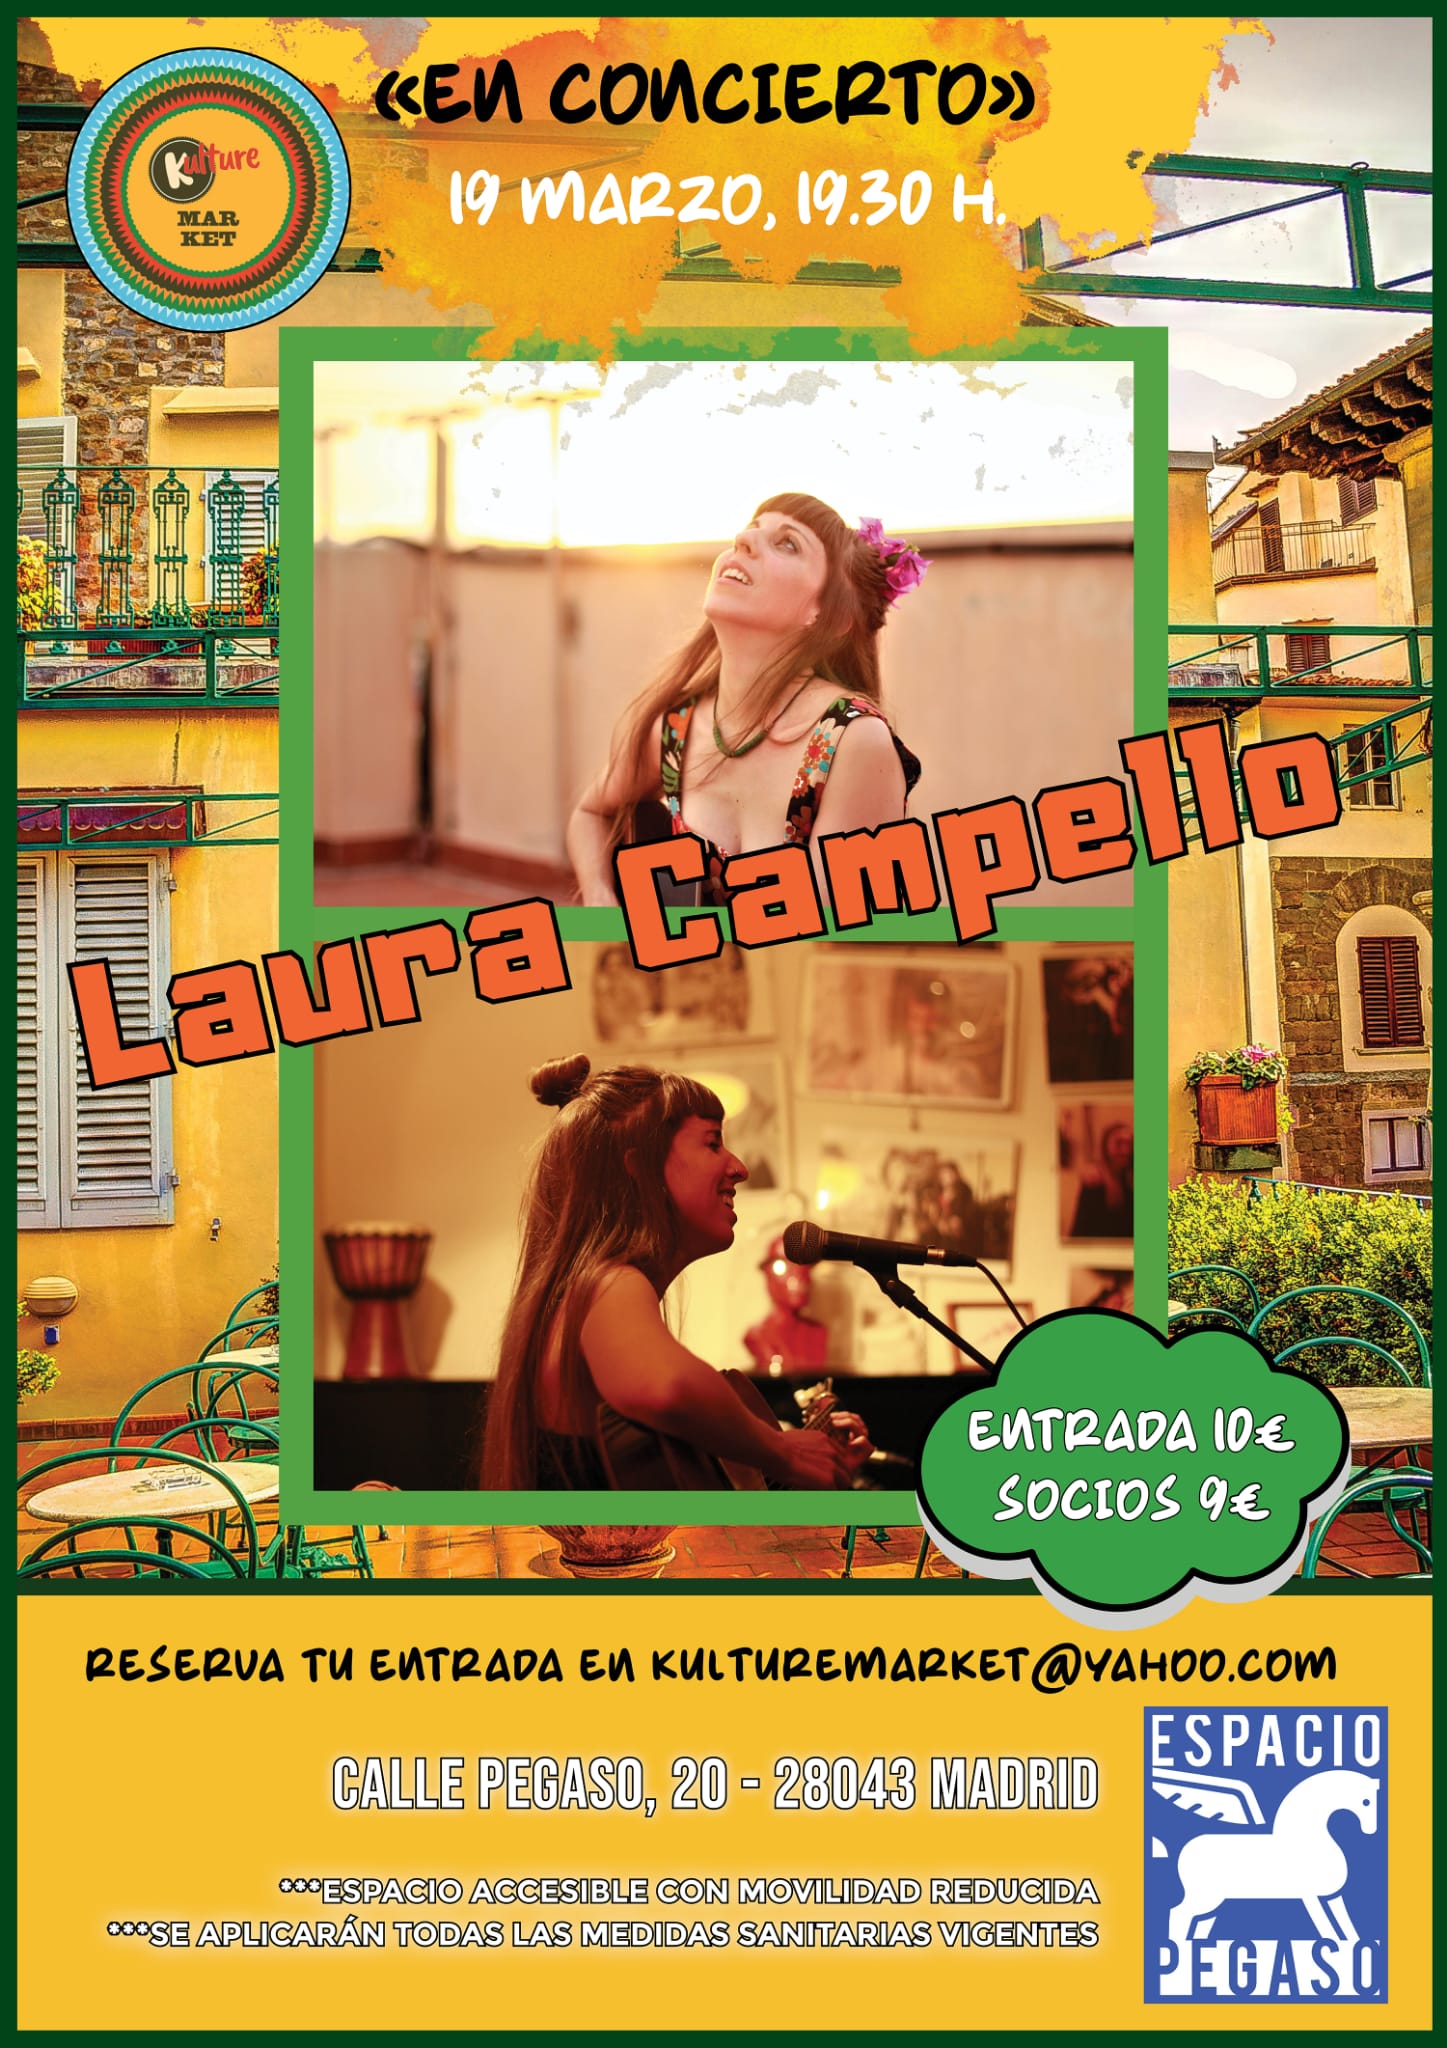 Laura Campello